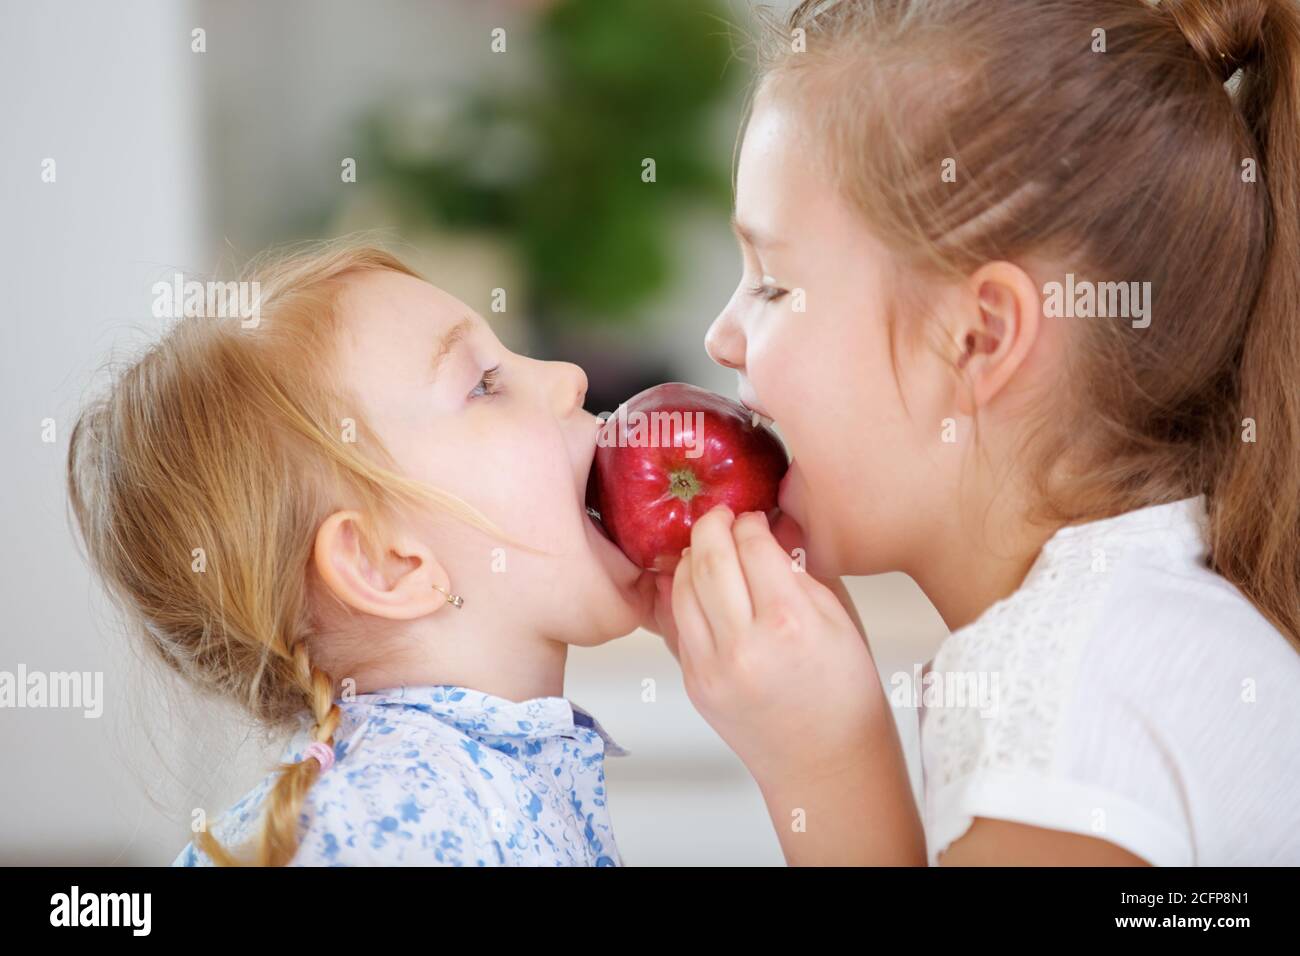 Deux enfants mangent une pomme rouge fraîche ensemble Banque D'Images